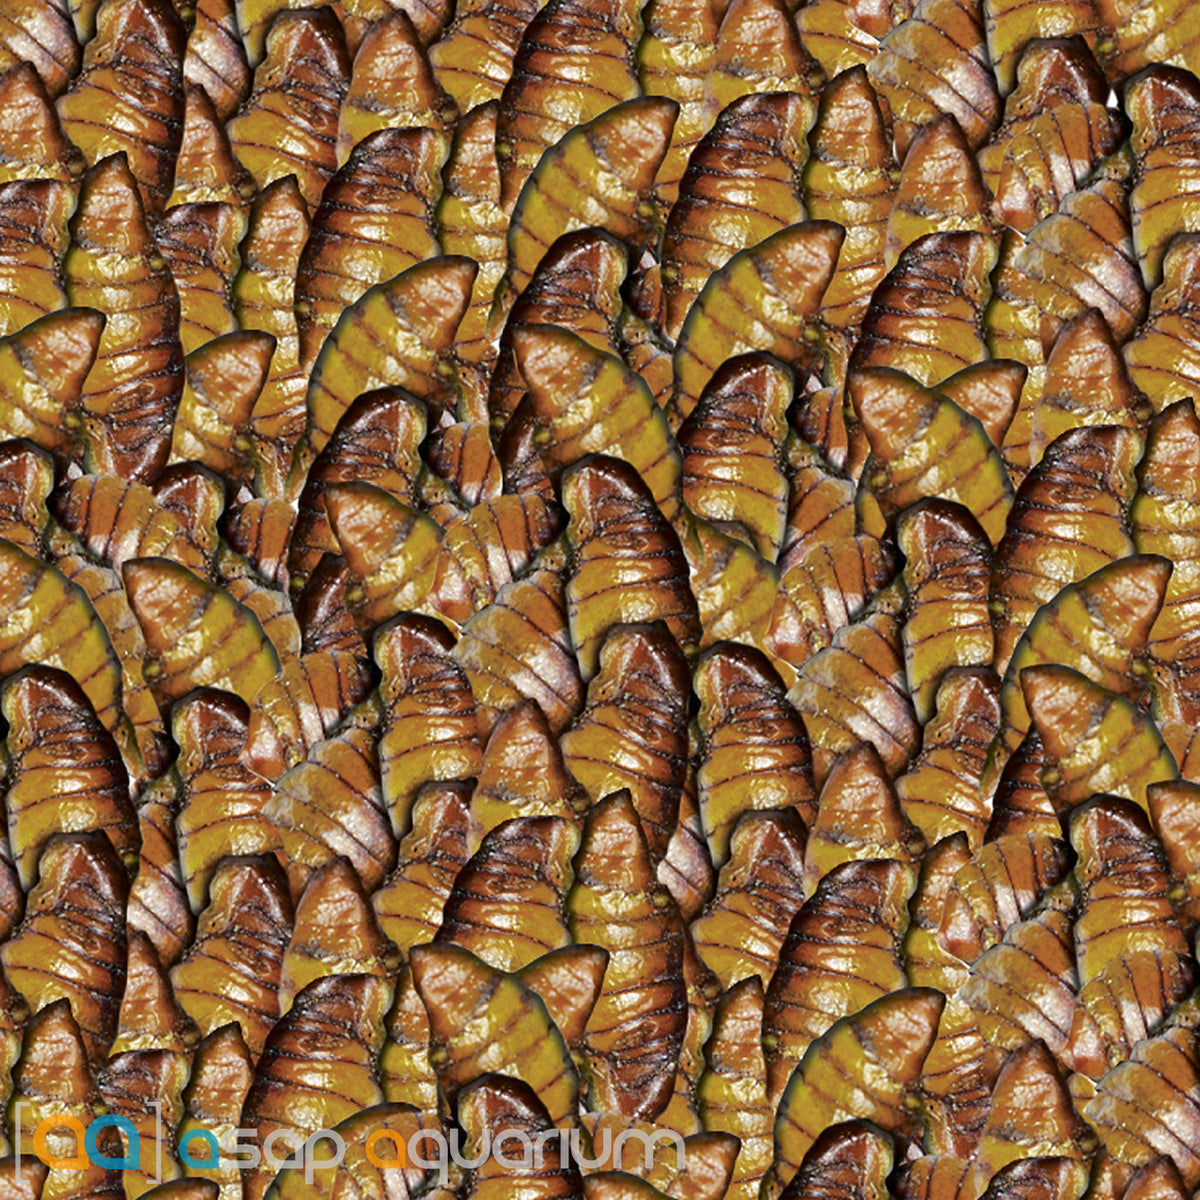 sera Koi Silkworm Nature 1000 ml 330 g